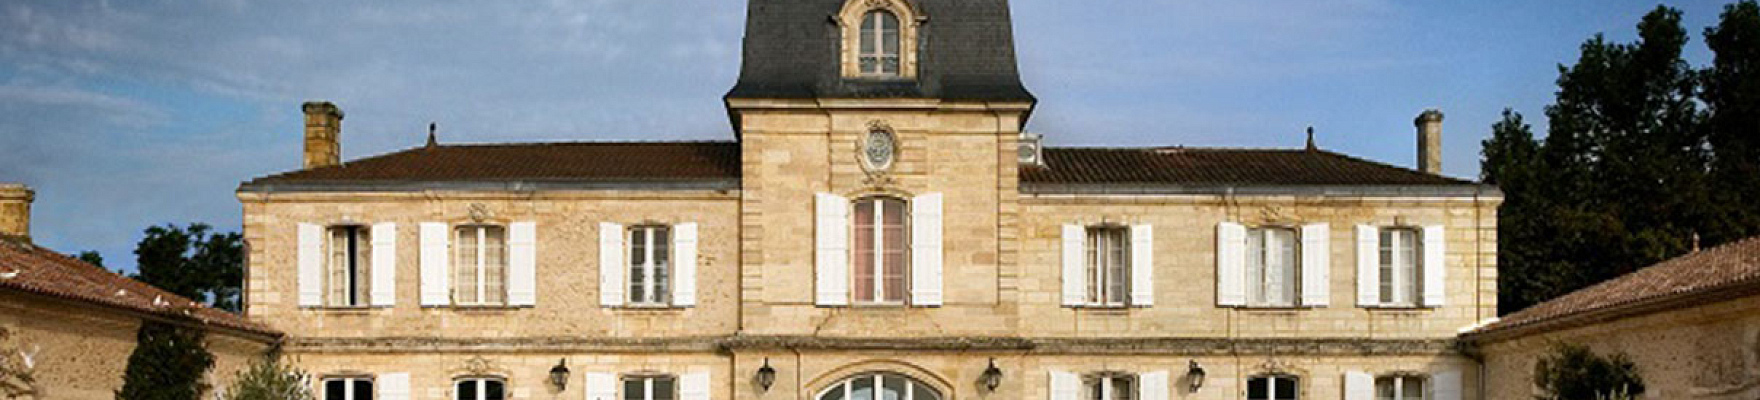 Chateau Les Grands Marechaux